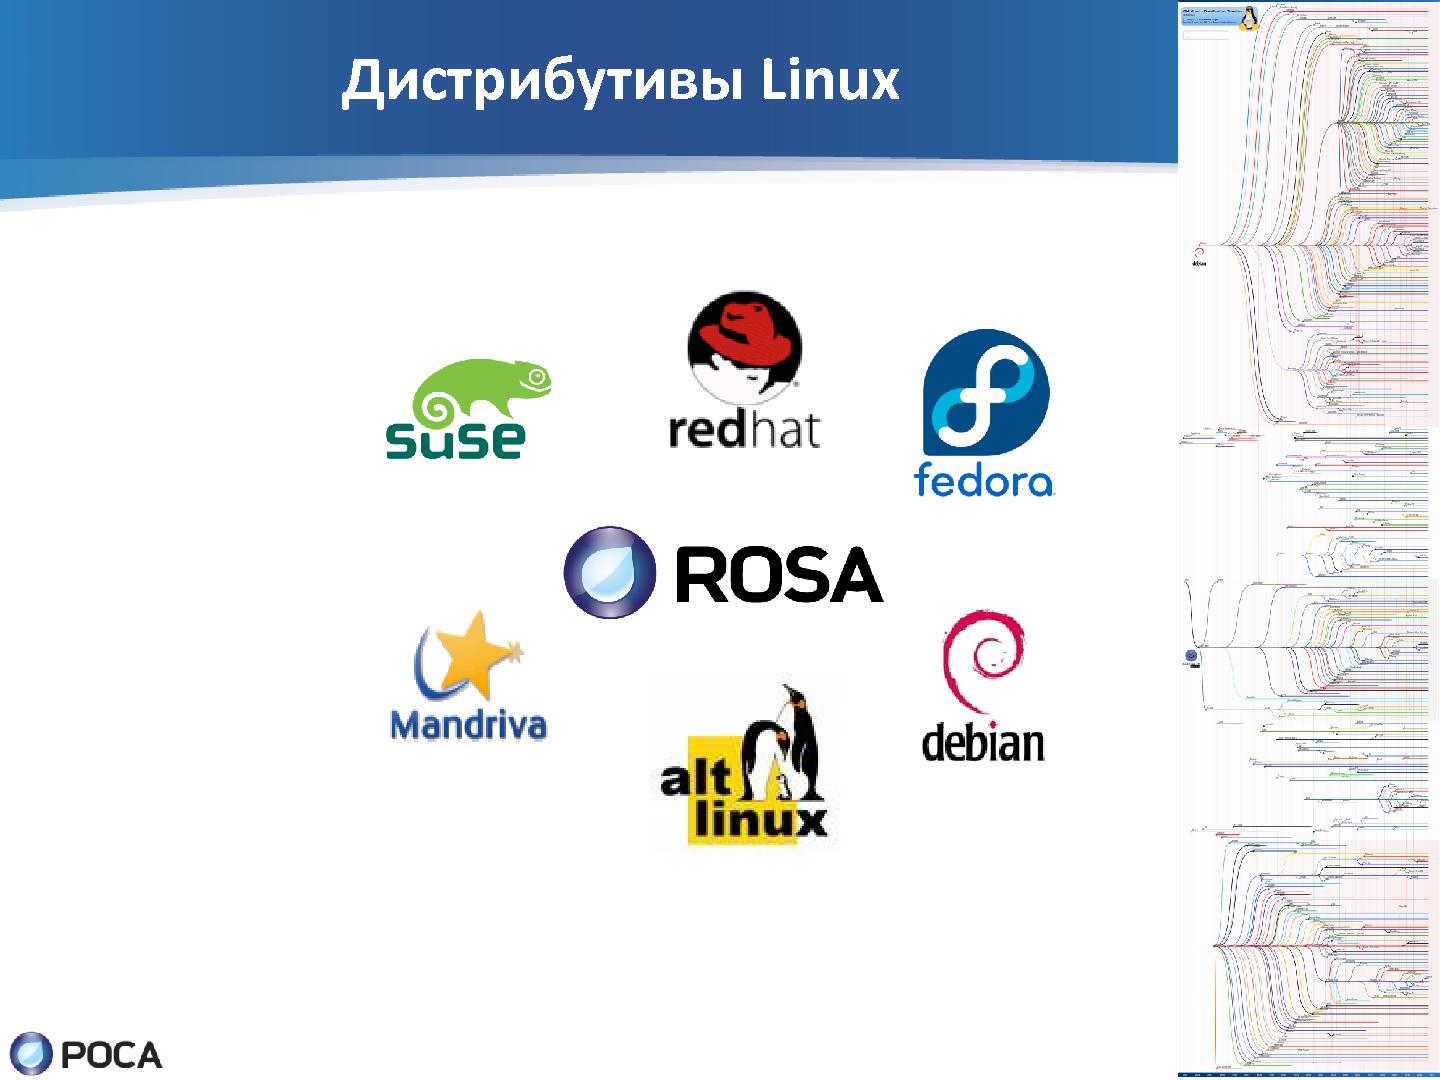 Файл:Задачи и инструменты автоматизации рабочего места майнтейнера операционной системы Linux (SECR-2012).pdf